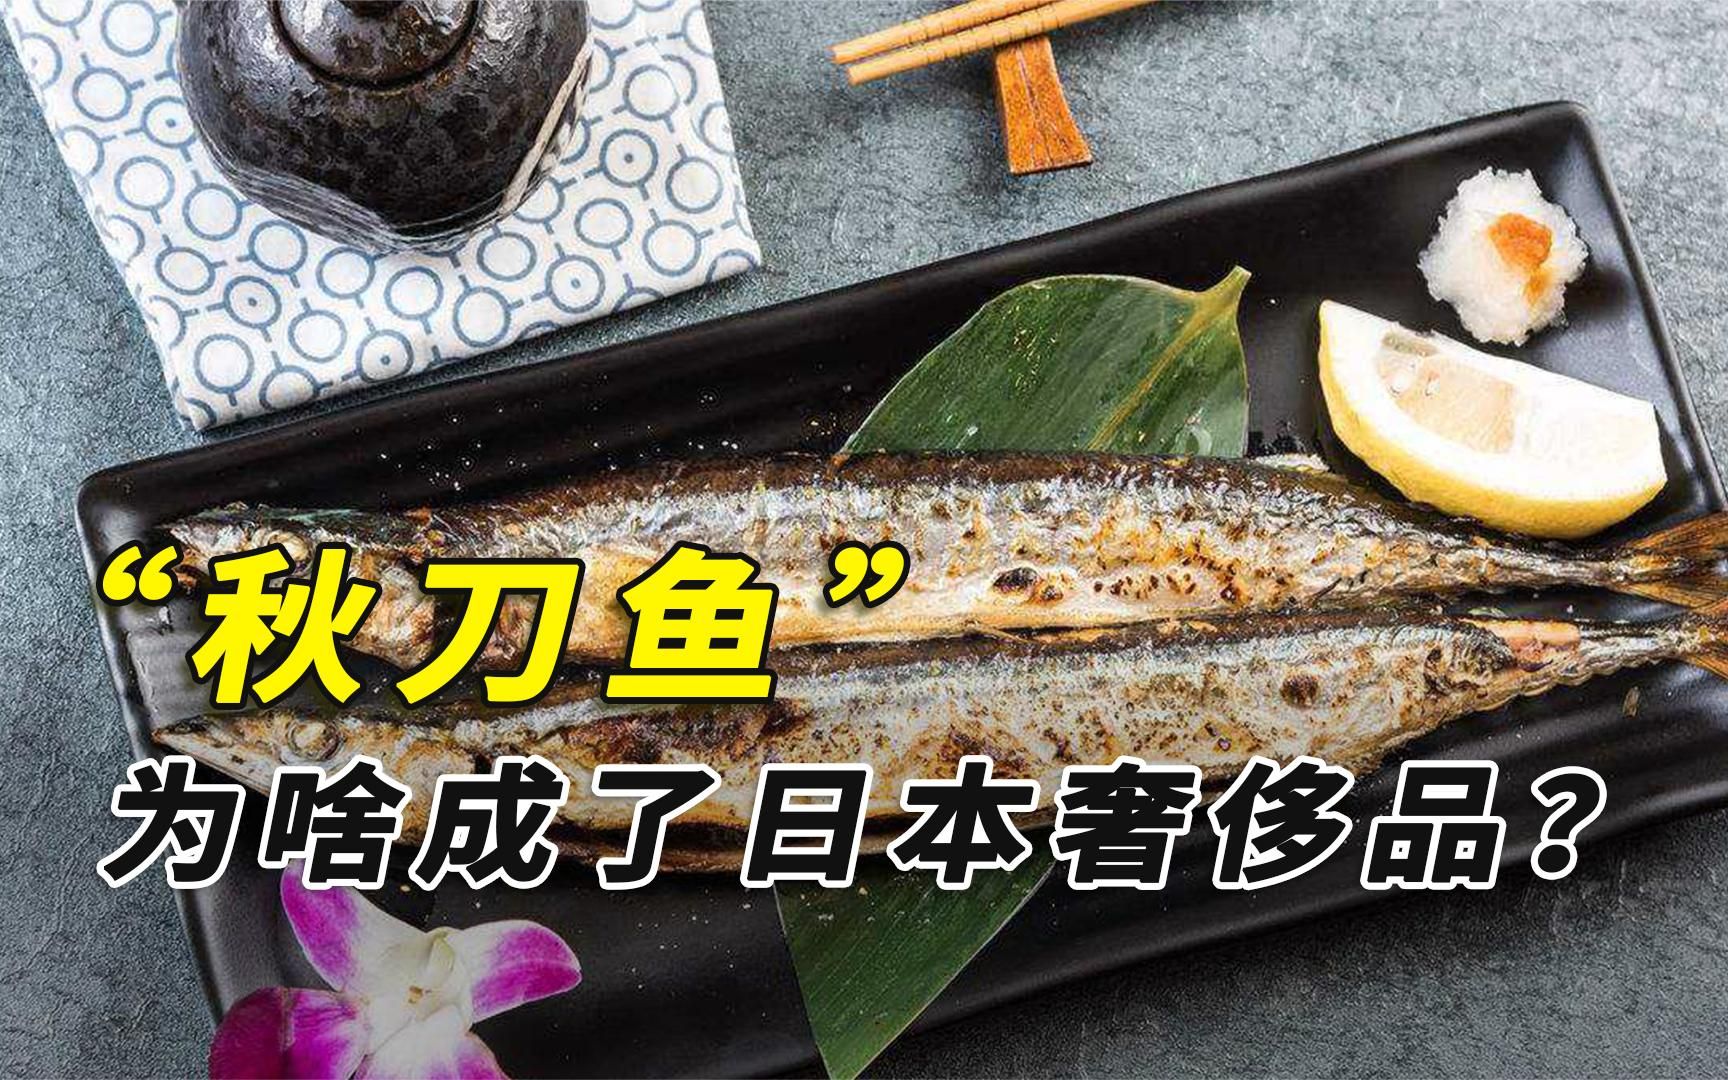 中国廉价的秋刀鱼，成为日本奢侈品后，他们竟想“甩锅”给我们